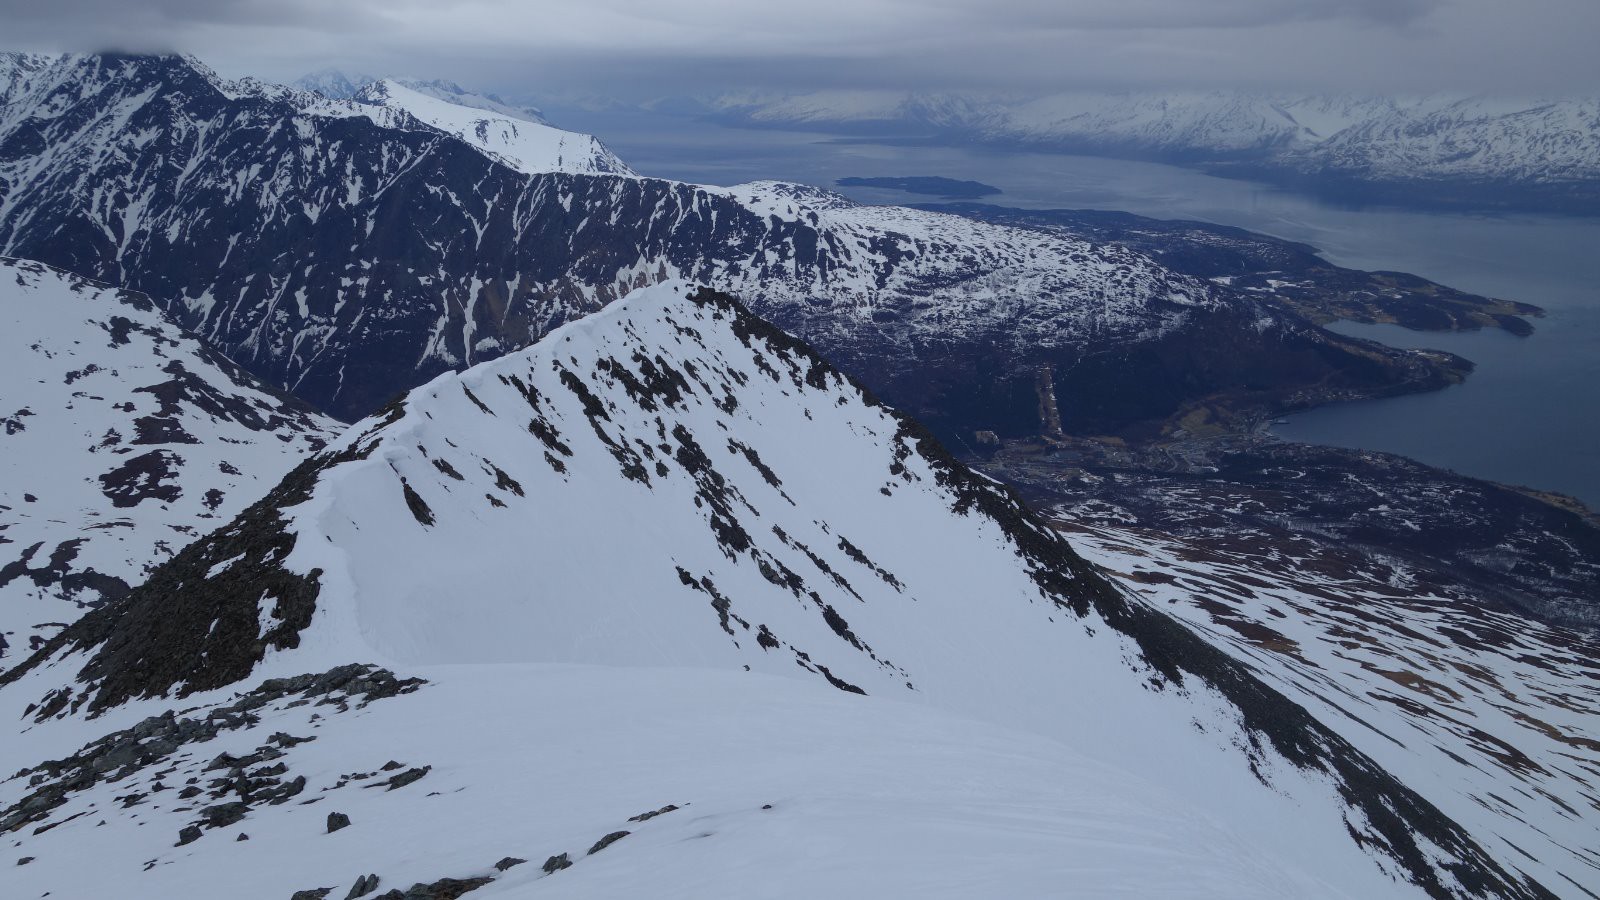 L'arête skiable vue depuis le sommet